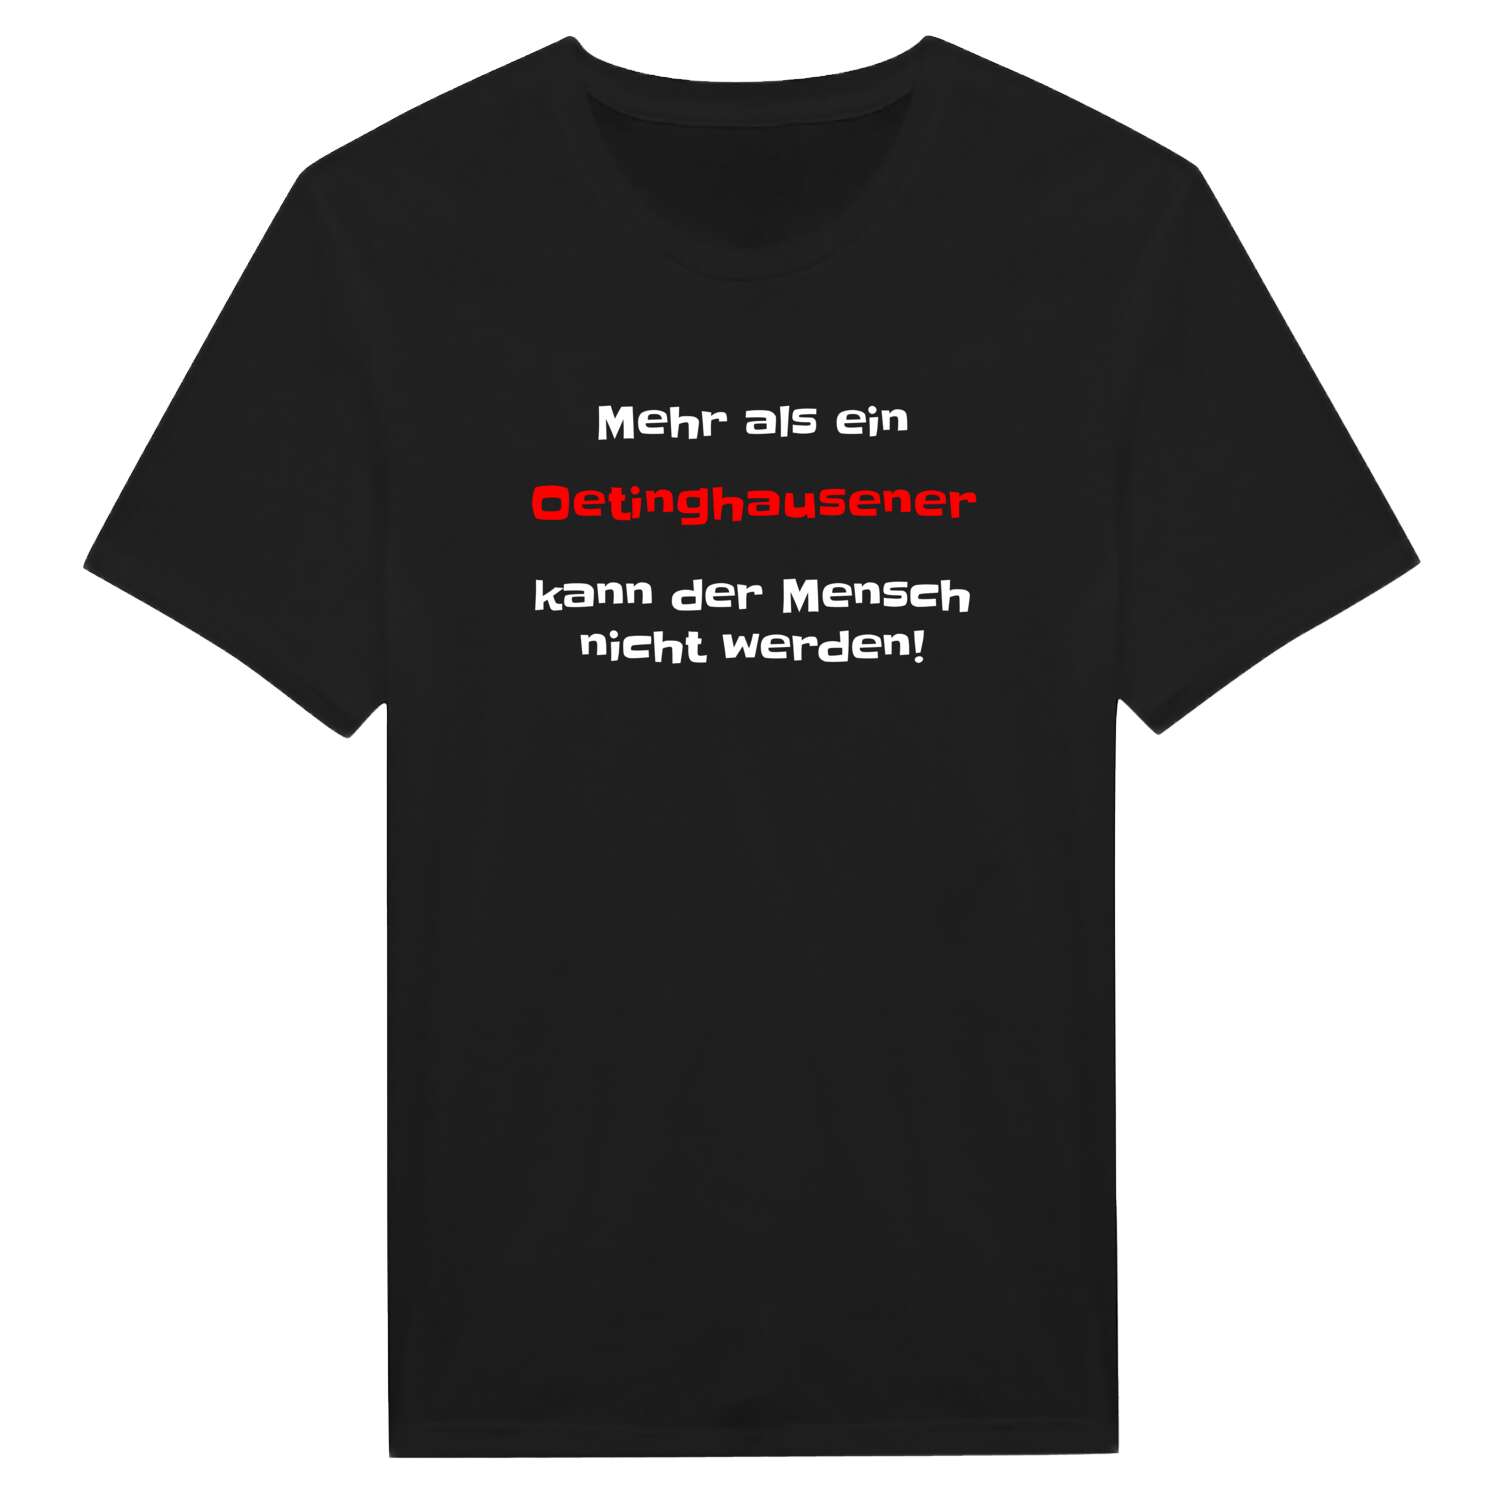 Oetinghausen T-Shirt »Mehr als ein«